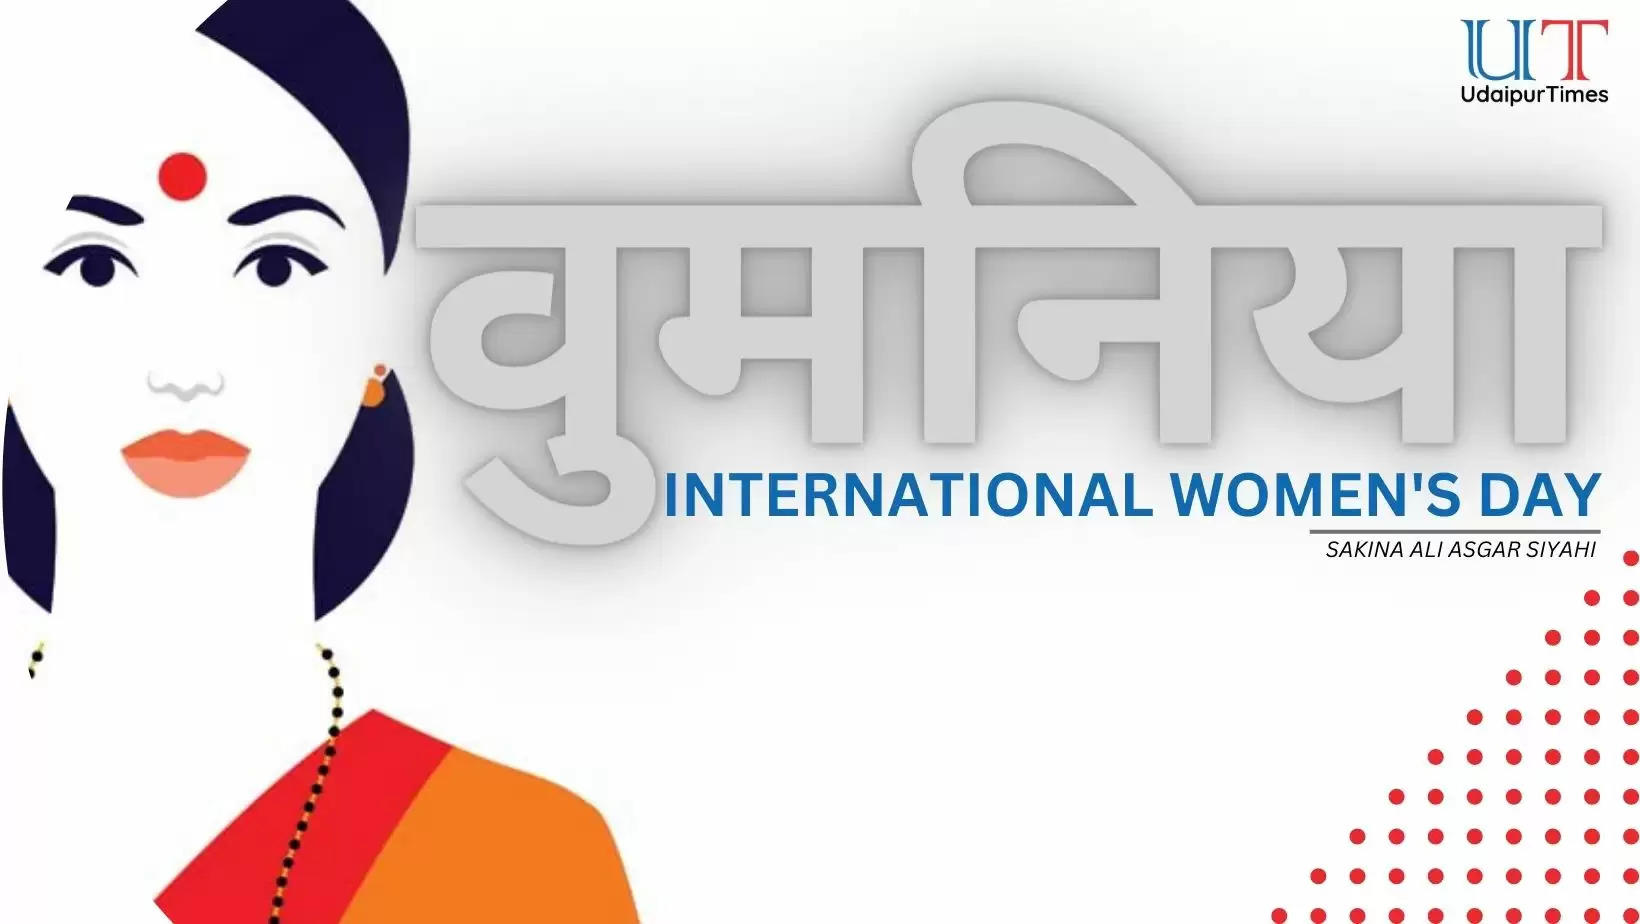 International Womens Day Poem Udaipur, Sakina Ali Asgar Siyahi